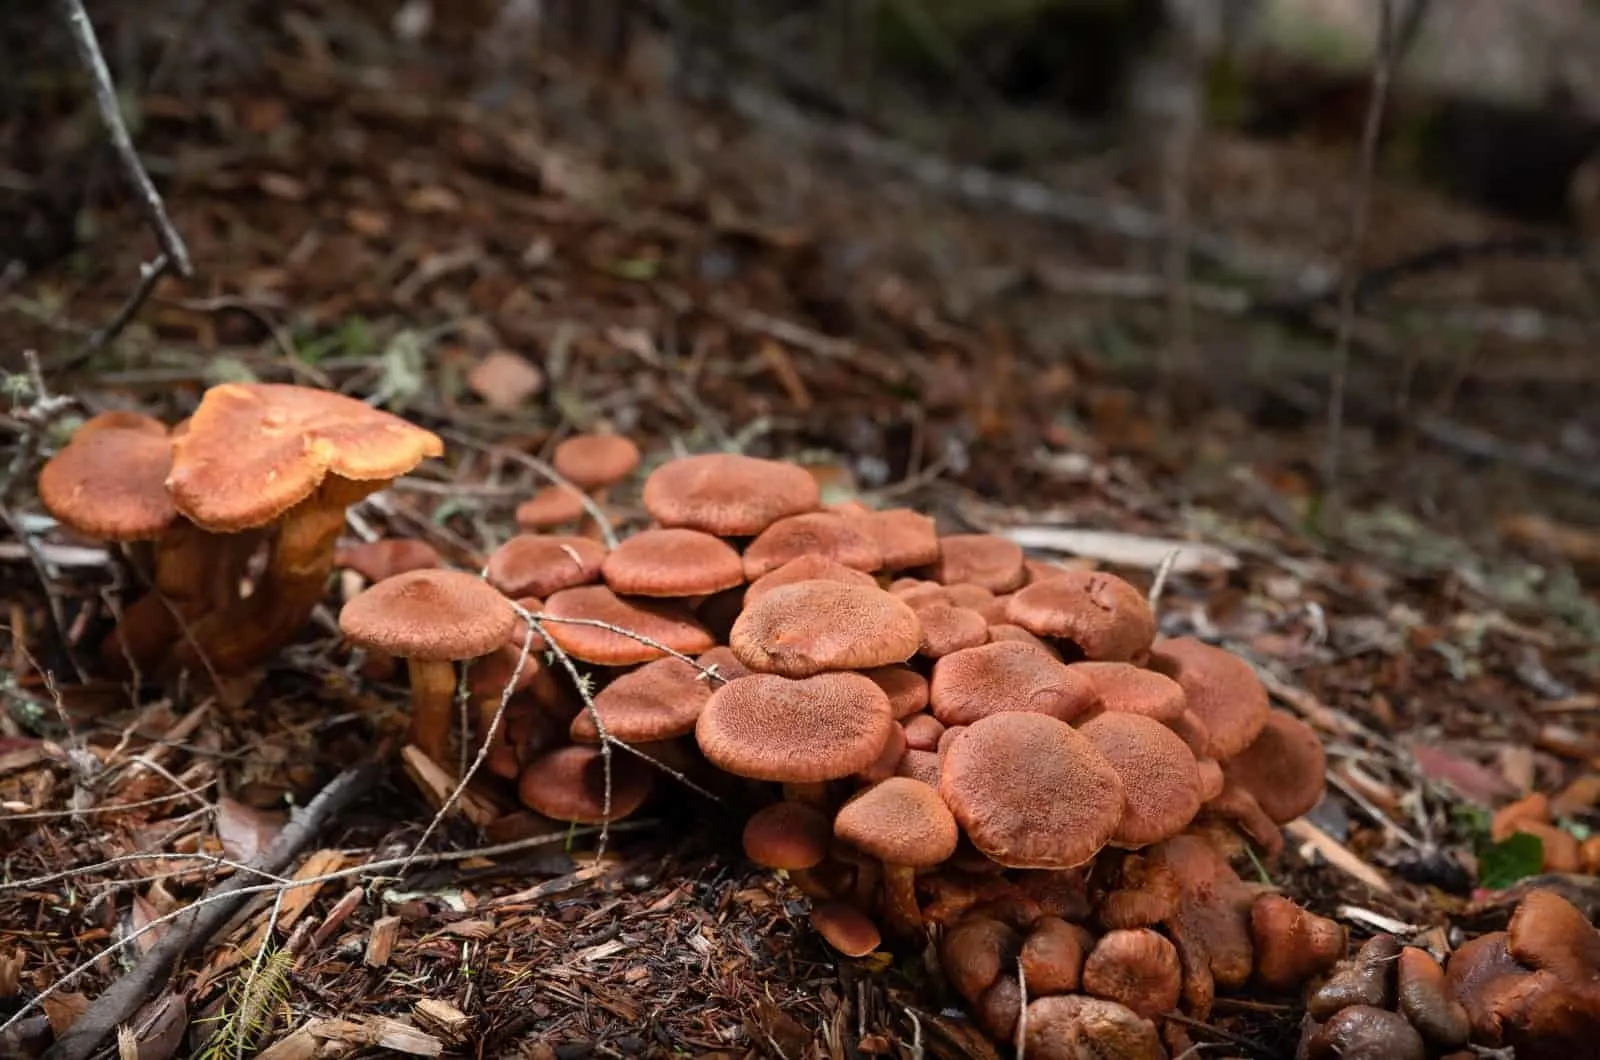 Fungus growing in woods